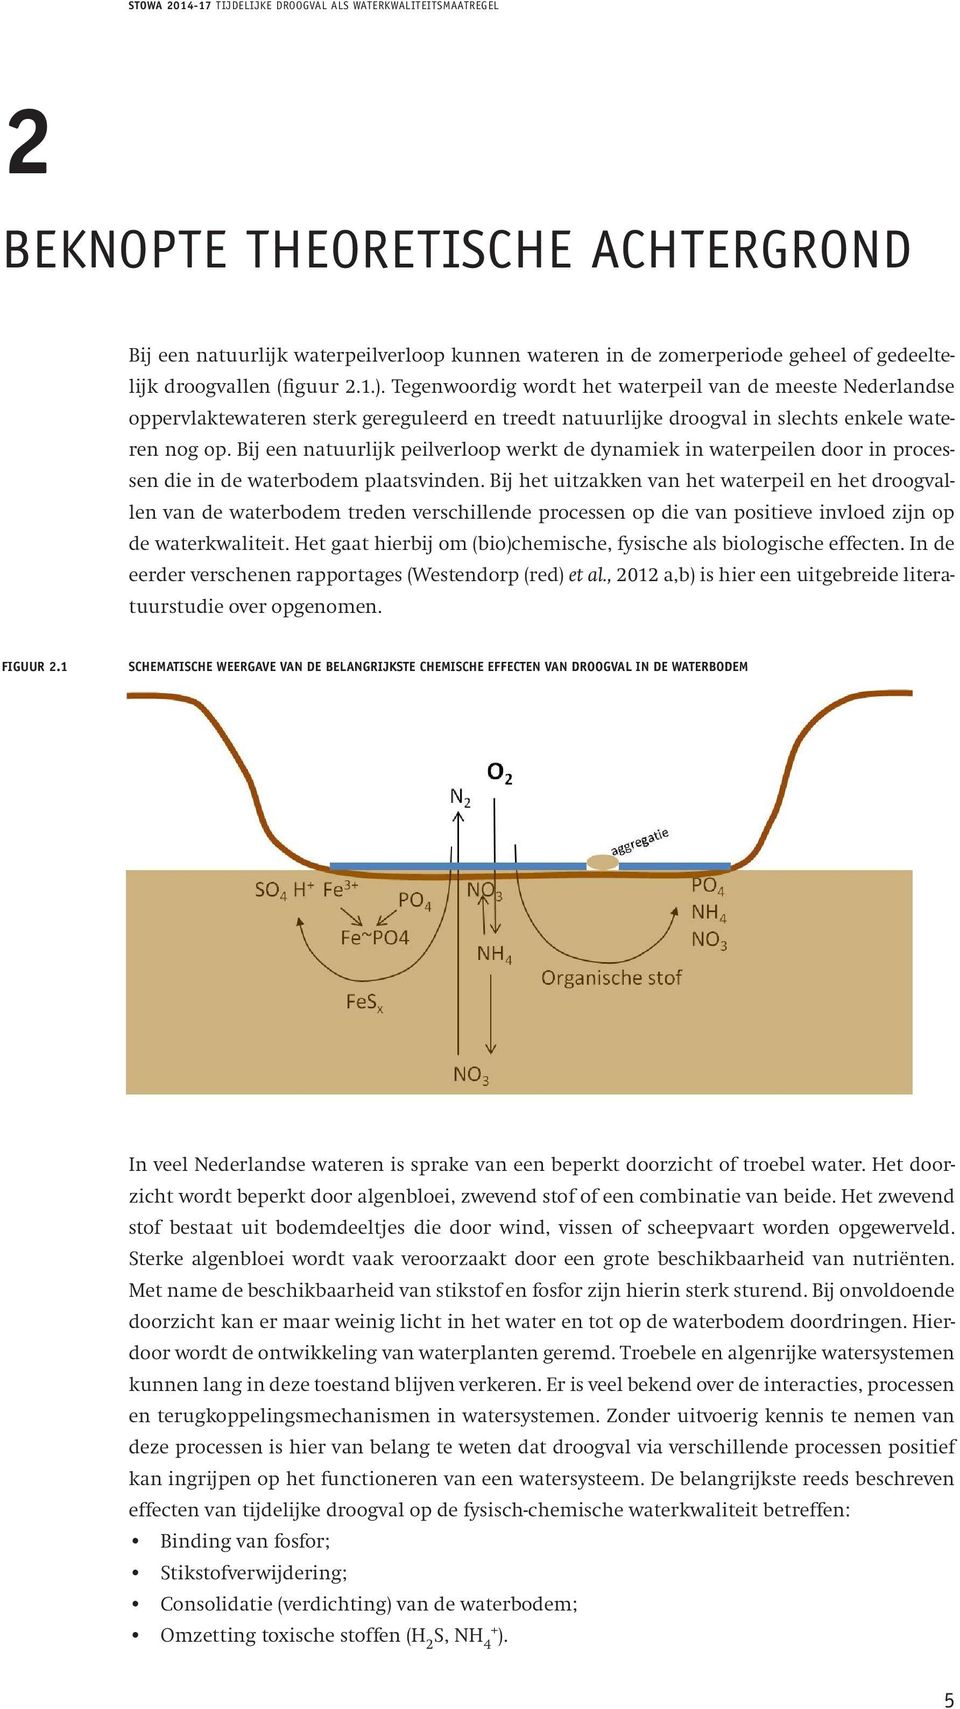 Bij een natuurlijk peilverloop werkt de dynamiek in waterpeilen door in processen die in de waterbodem plaatsvinden.